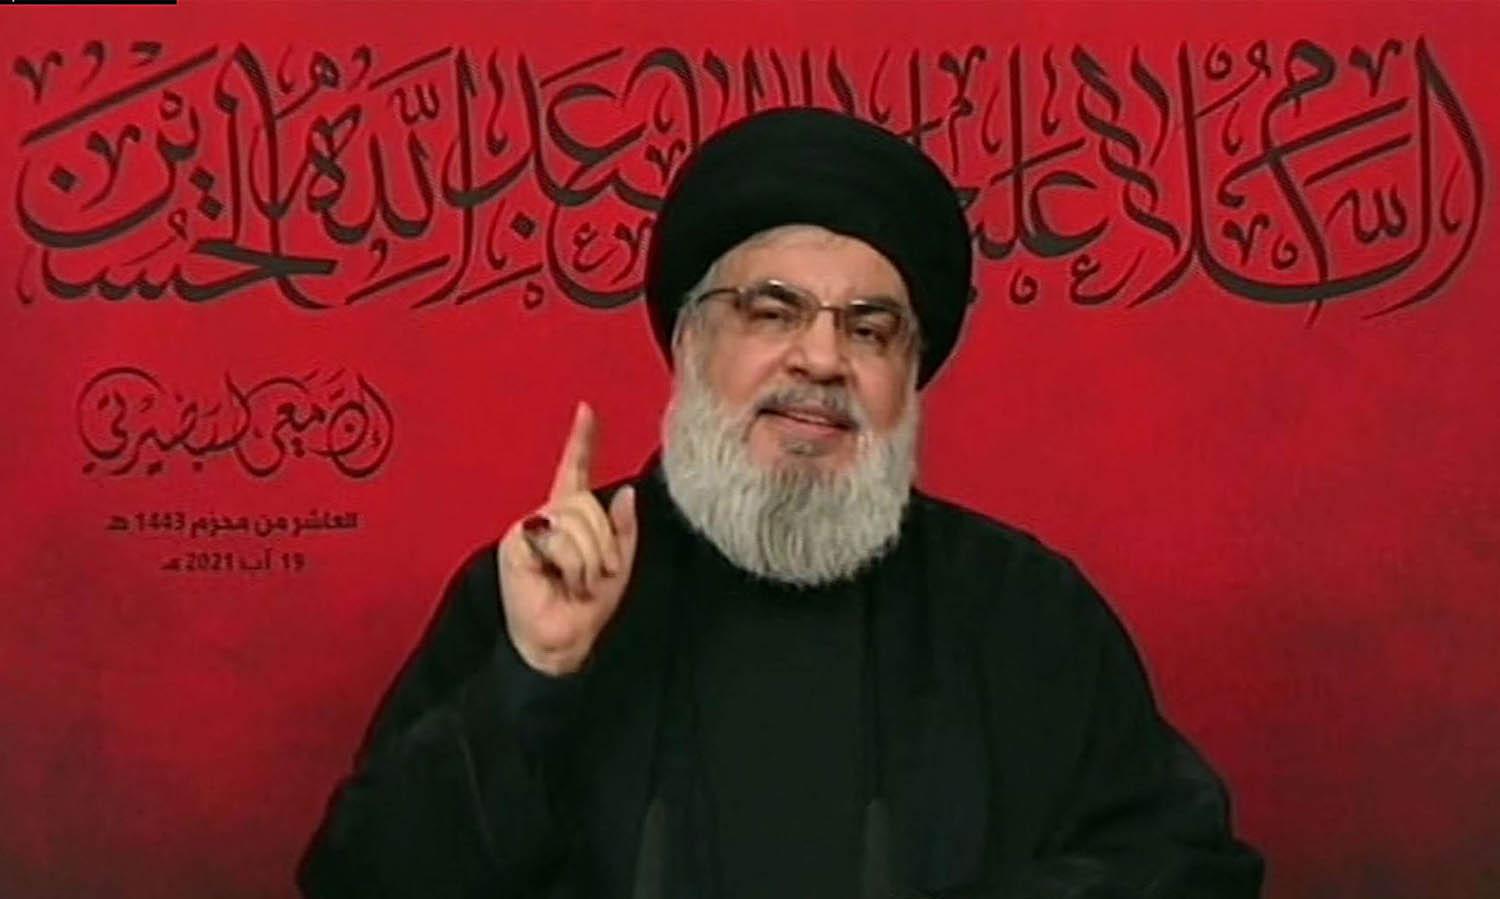 زعيم حزب الله حسن نصرالله يتحدث في كلمة مسجلة